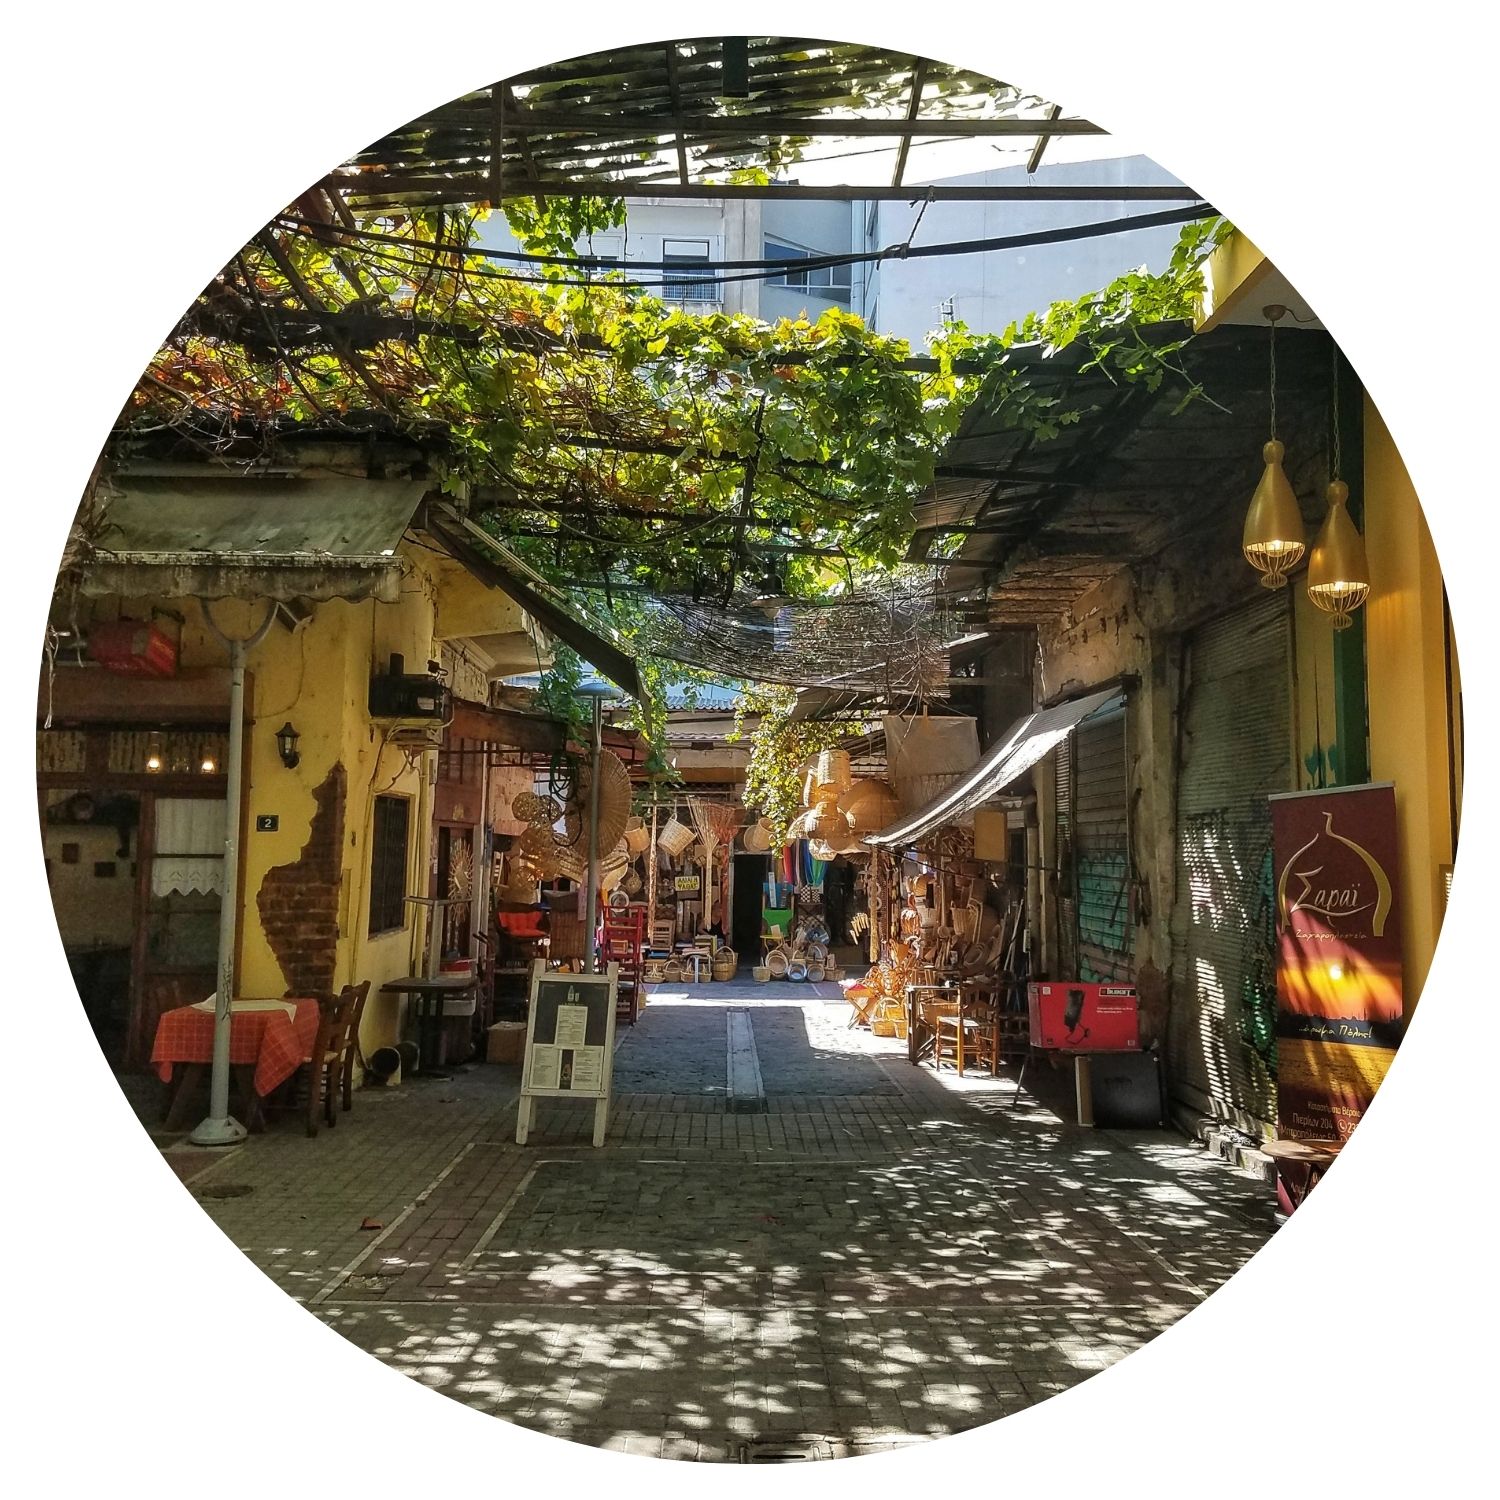 Marché artisanal pittoresque en Grèce, avec des petits couloirs ombragés par des feuilles d'arbre et baignés de rayons de soleil, offrant une ambiance authentique.